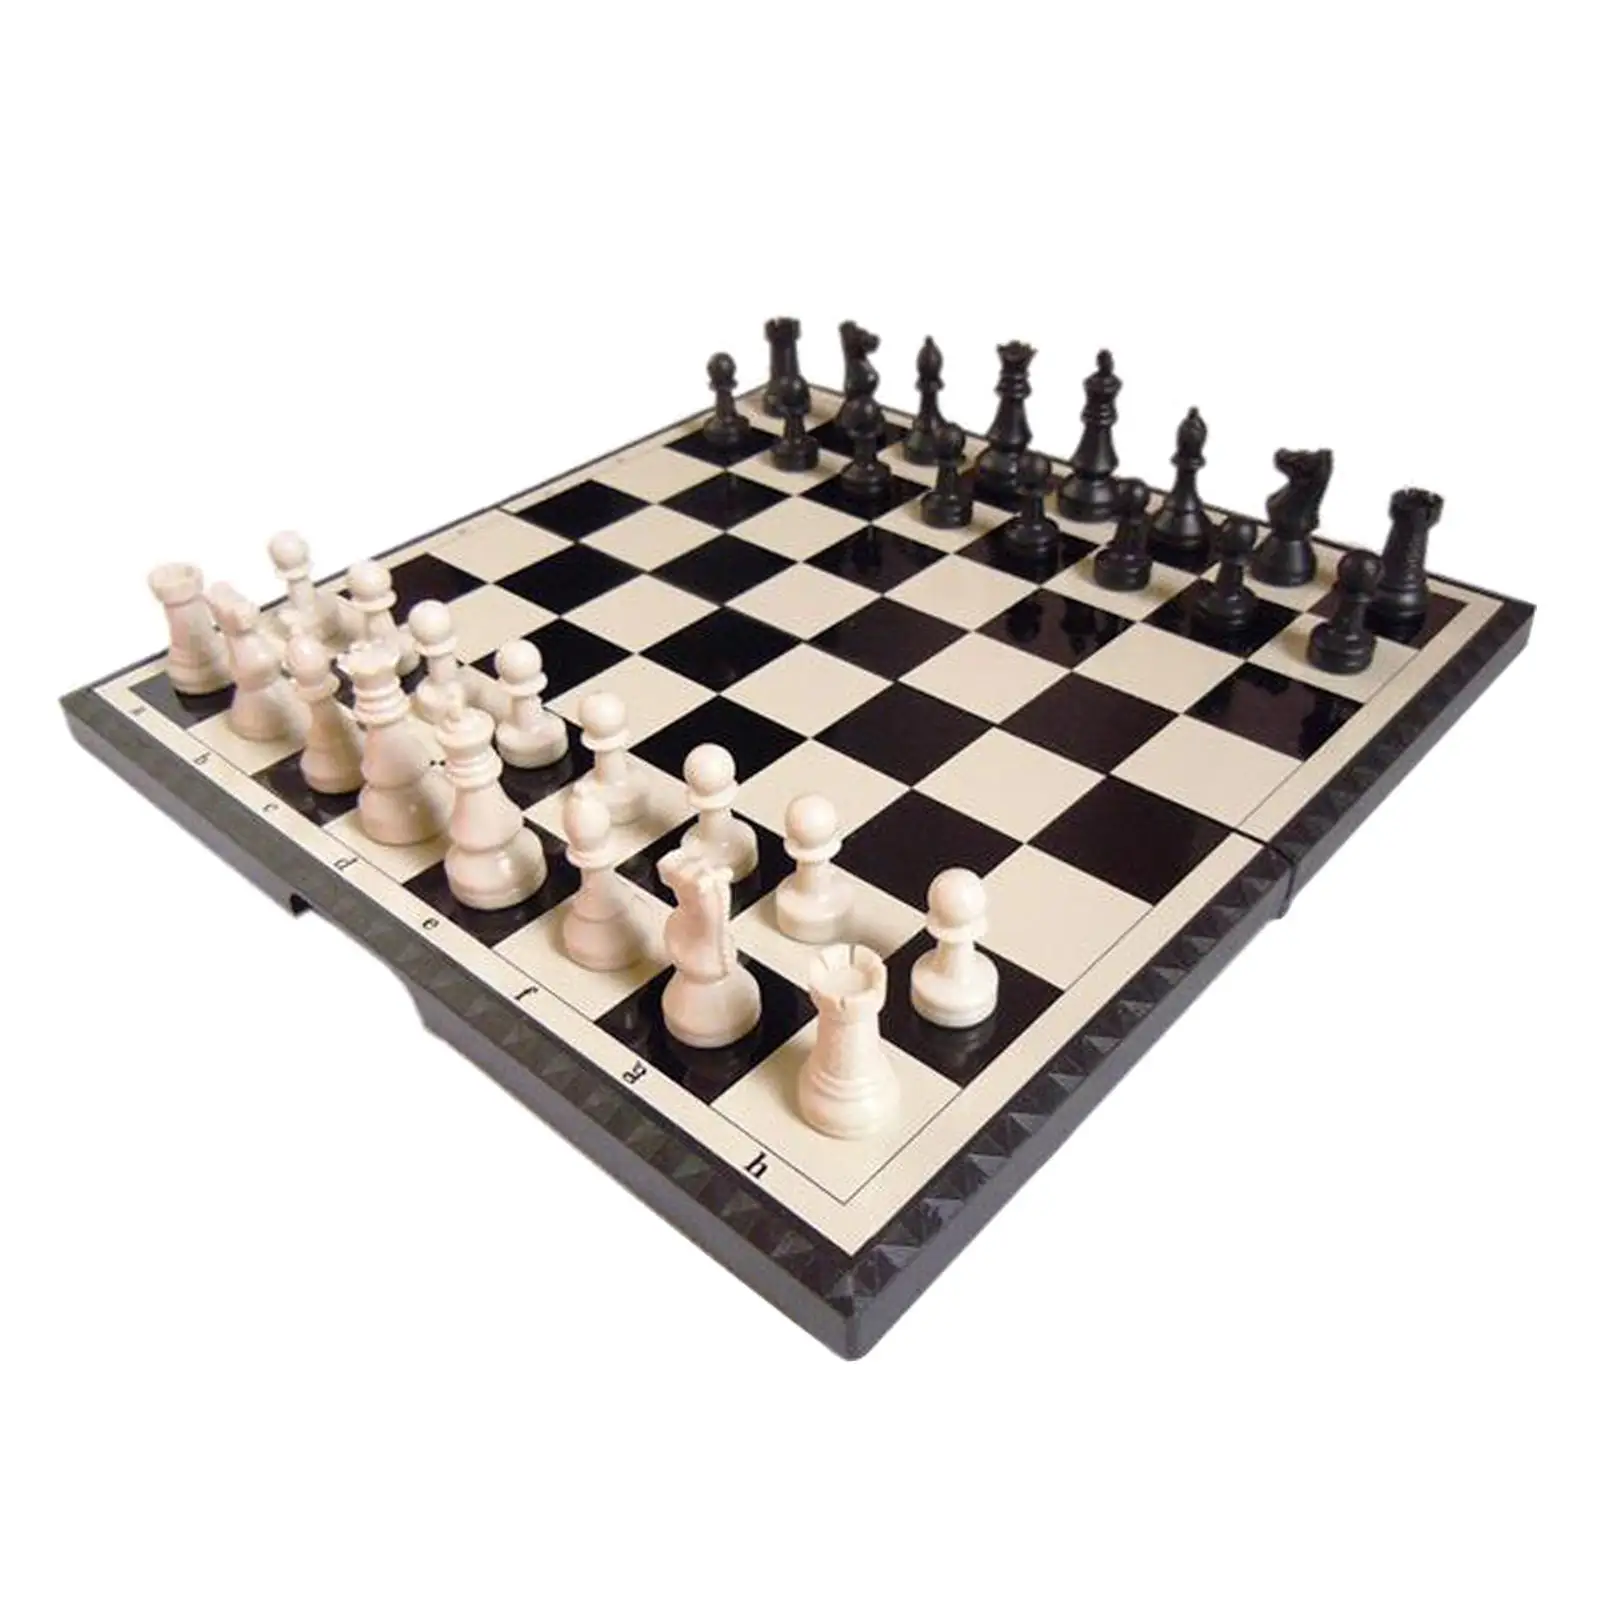 11-Zoll-internat ionales Schachspiel Falt schachbrett magnetische Schachfiguren Schachspiel 2 Spieler Familien unterhaltung Brettspiel